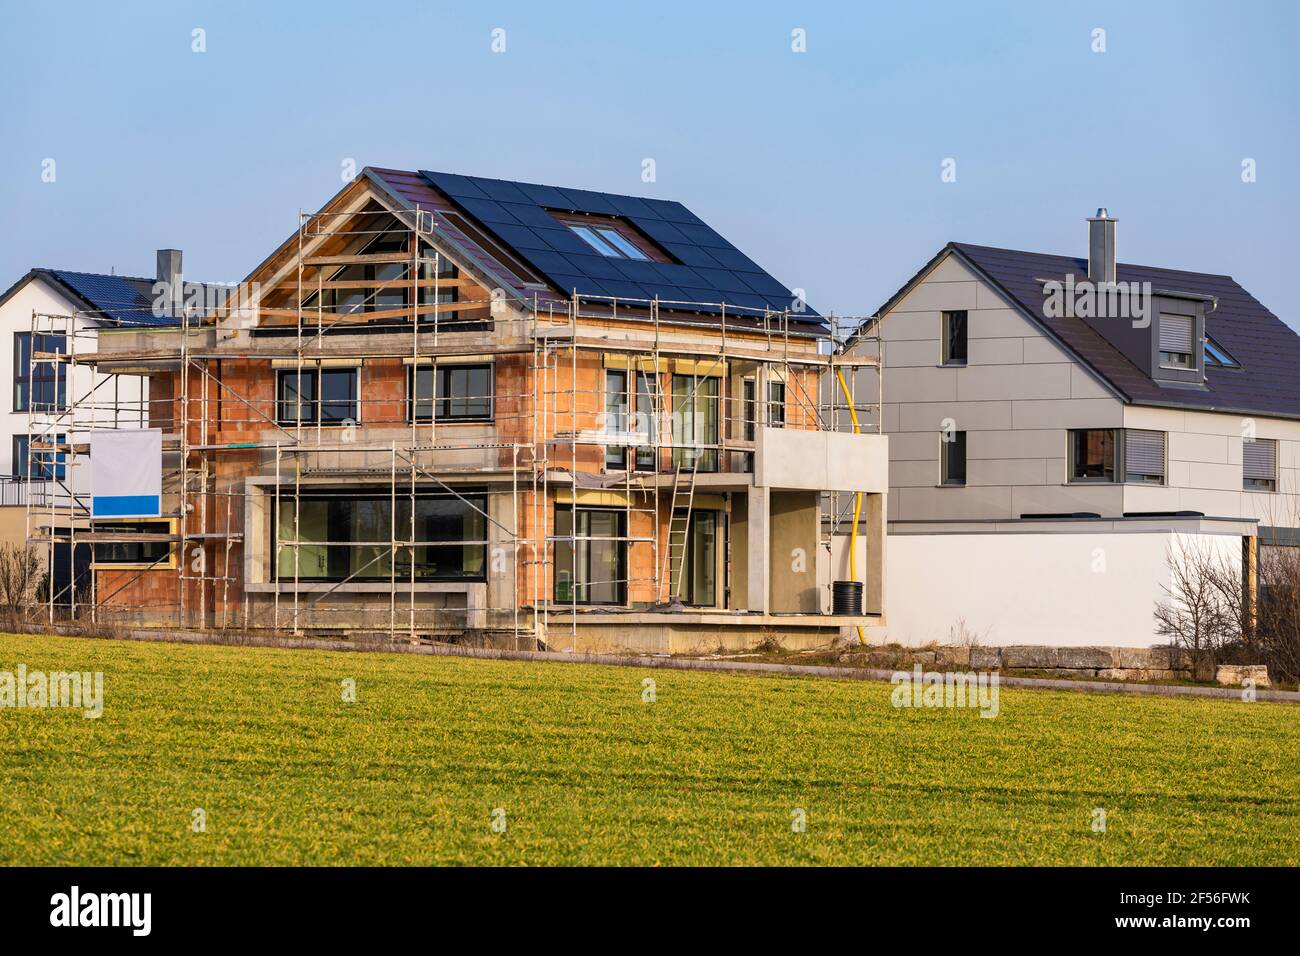 Allemagne, Bade-Wurtemberg, Waiblingen, maison moderne de banlieue à faible consommation d'énergie en construction Banque D'Images